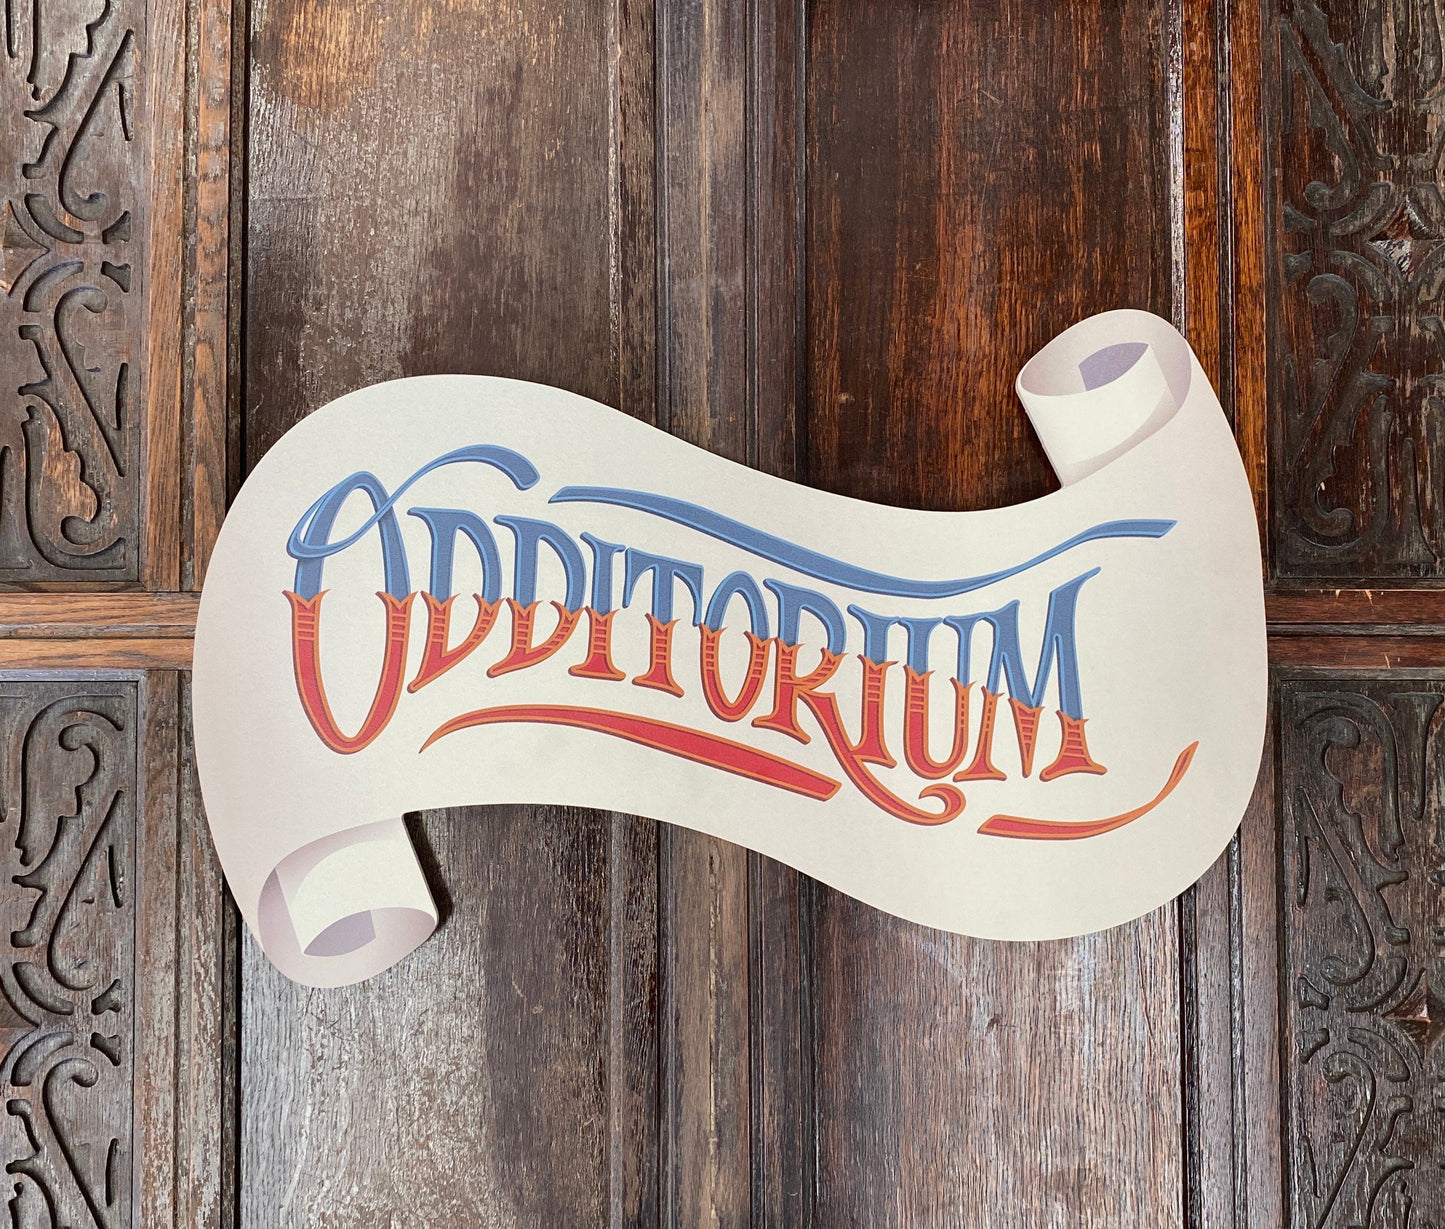 Odditorium Sign